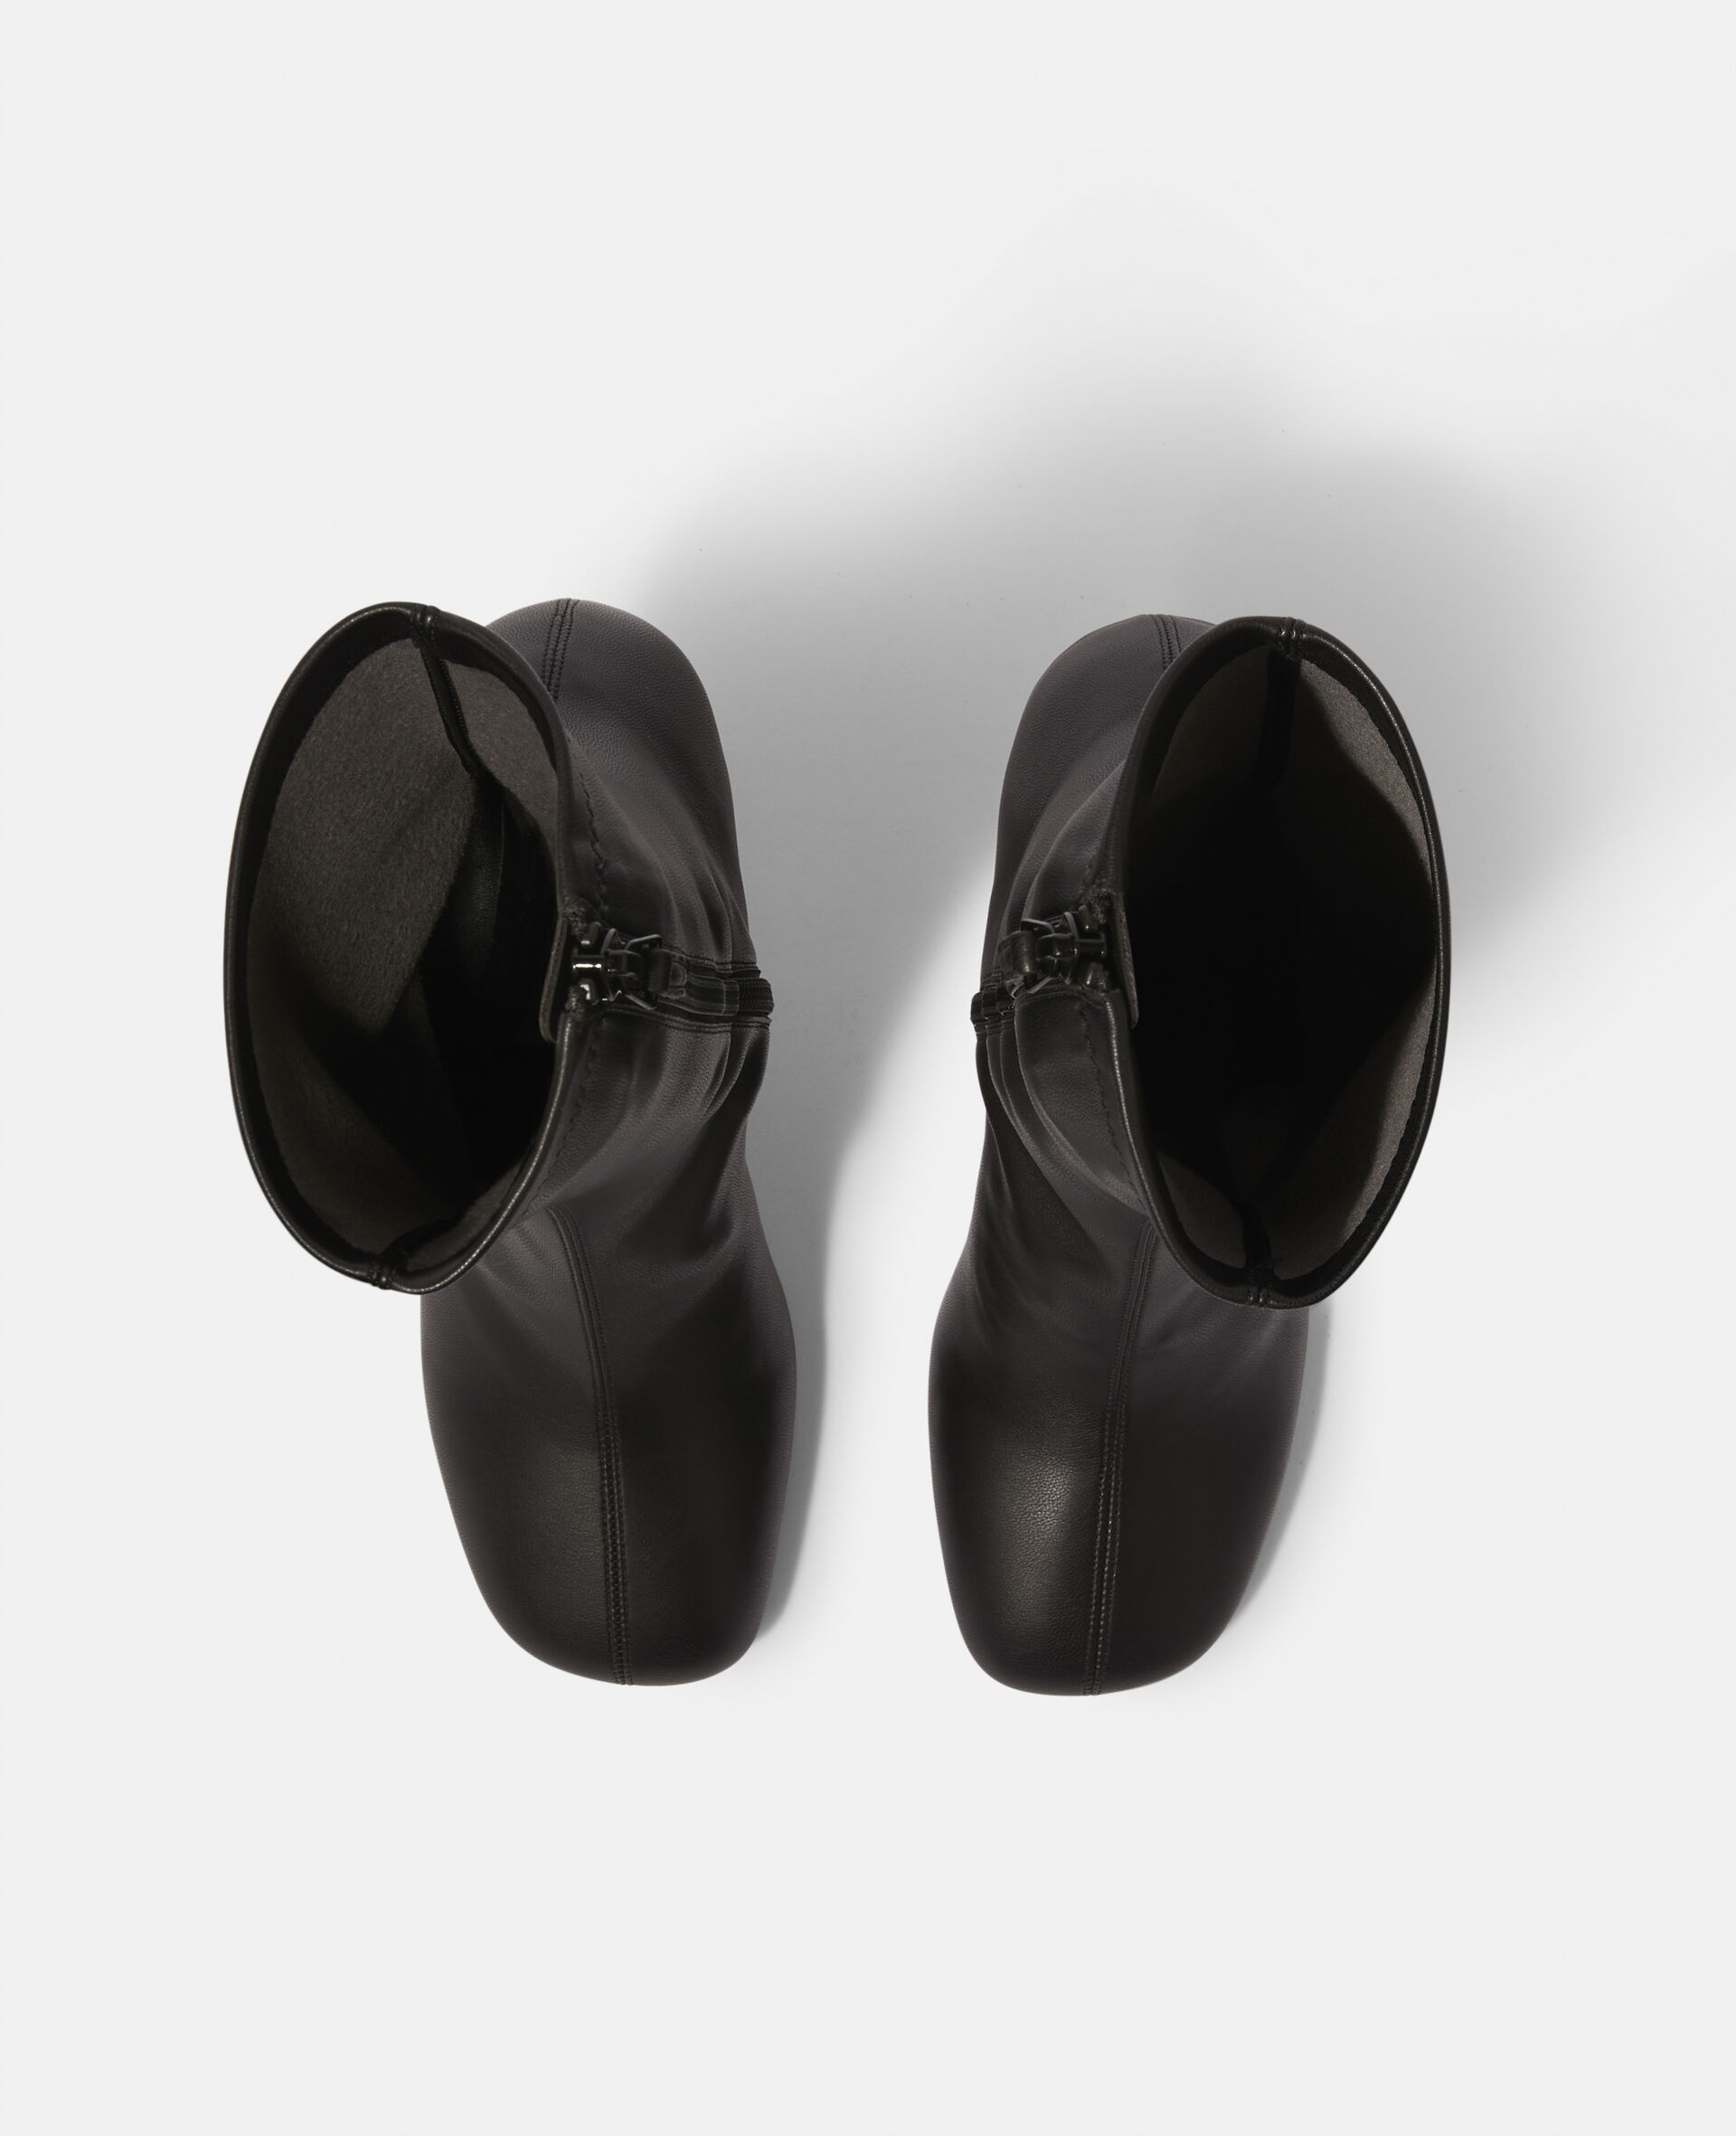 Shroom Heel Boots - 4